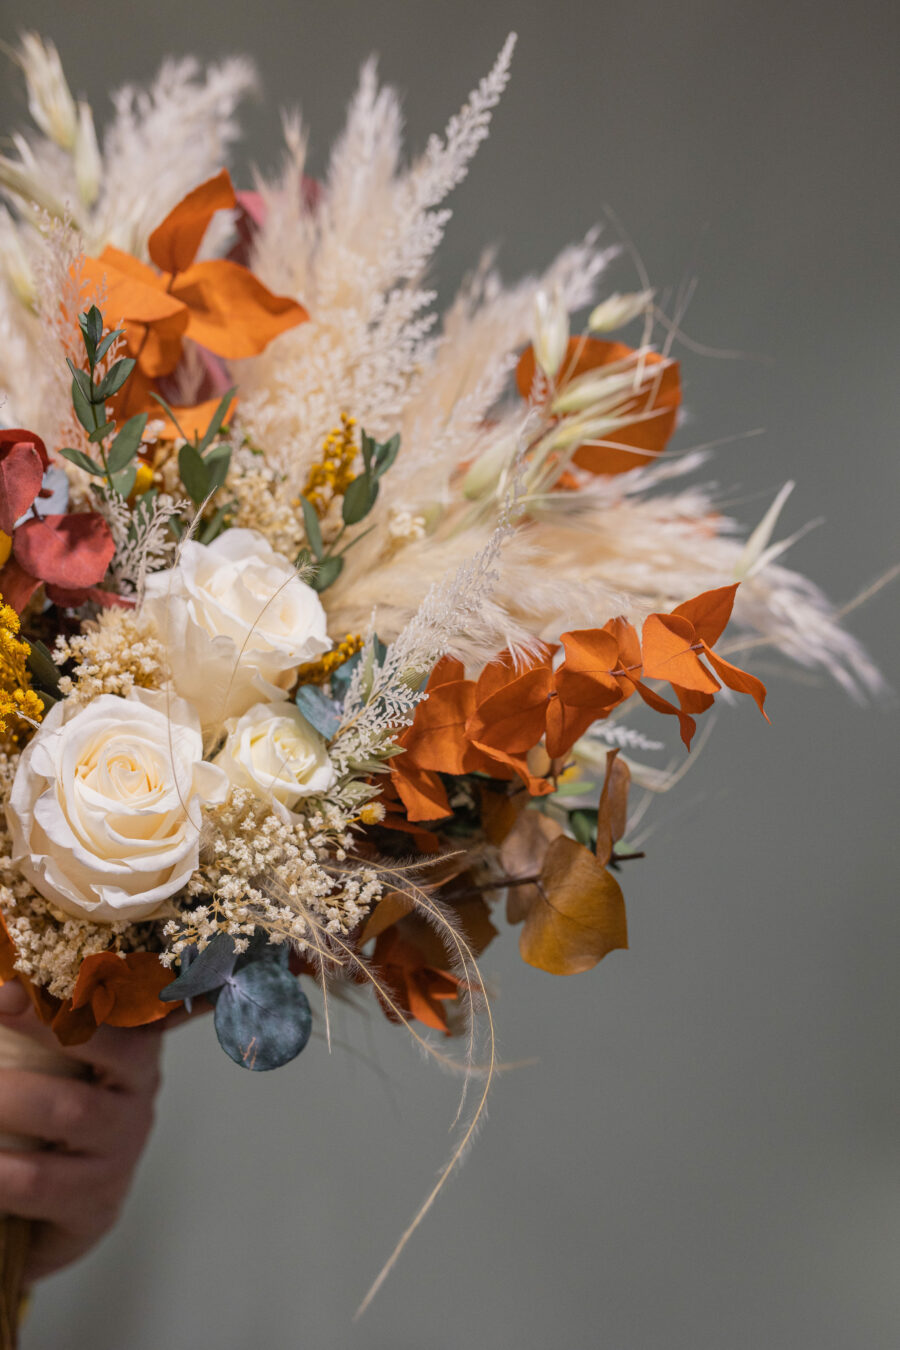 Descubre los diversos estilos de ramos de novia con flores preservadas y elige el que se adapte a tu personalidad.